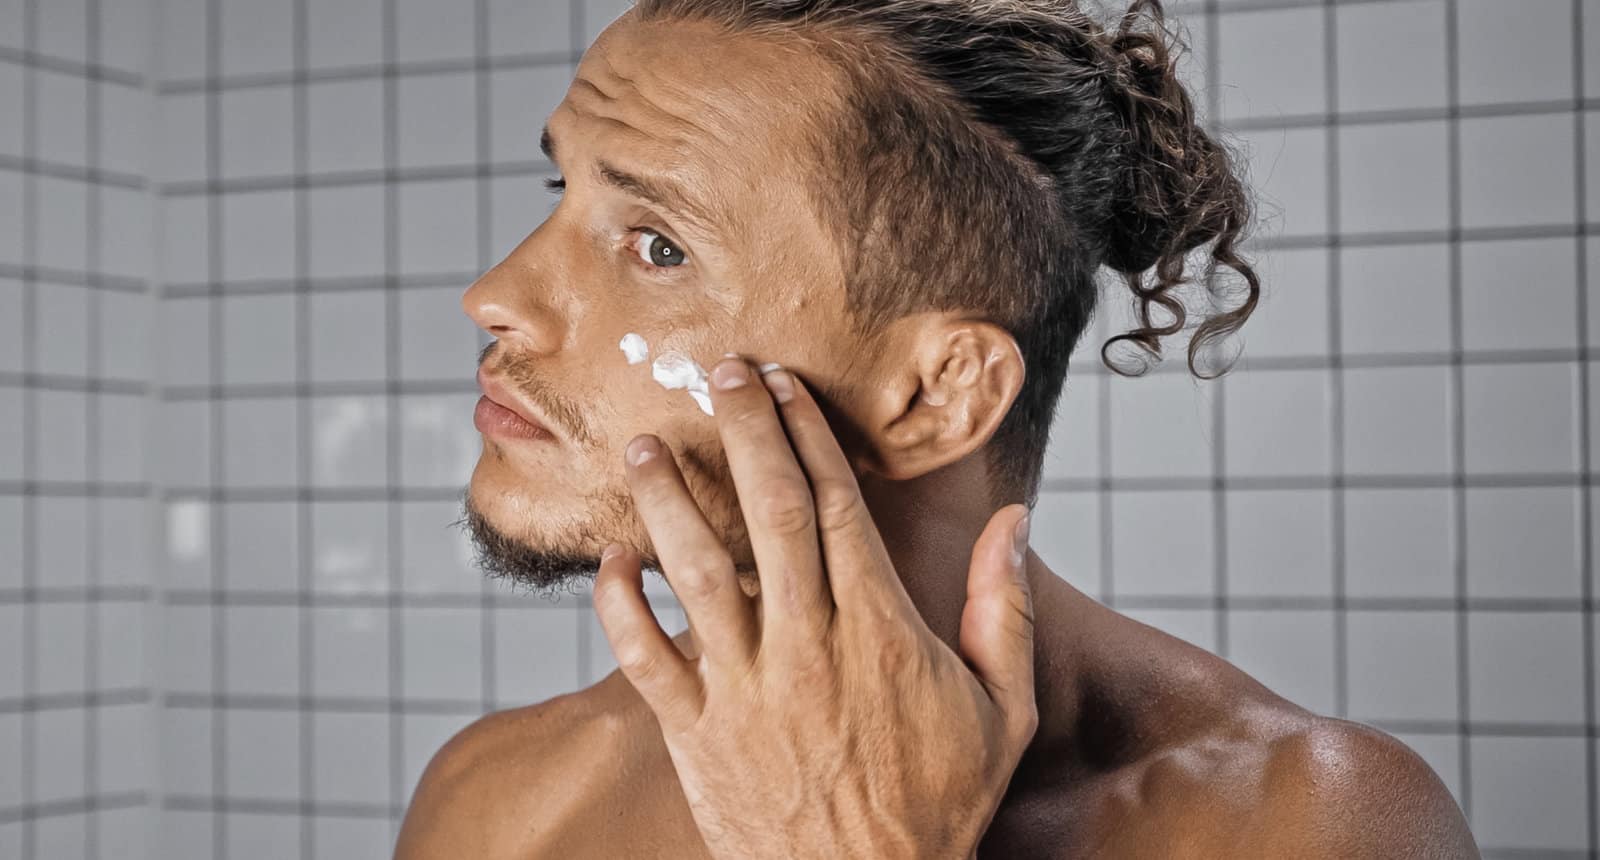 Mann mit empflindlicher Haut cremt sein Gesicht ein